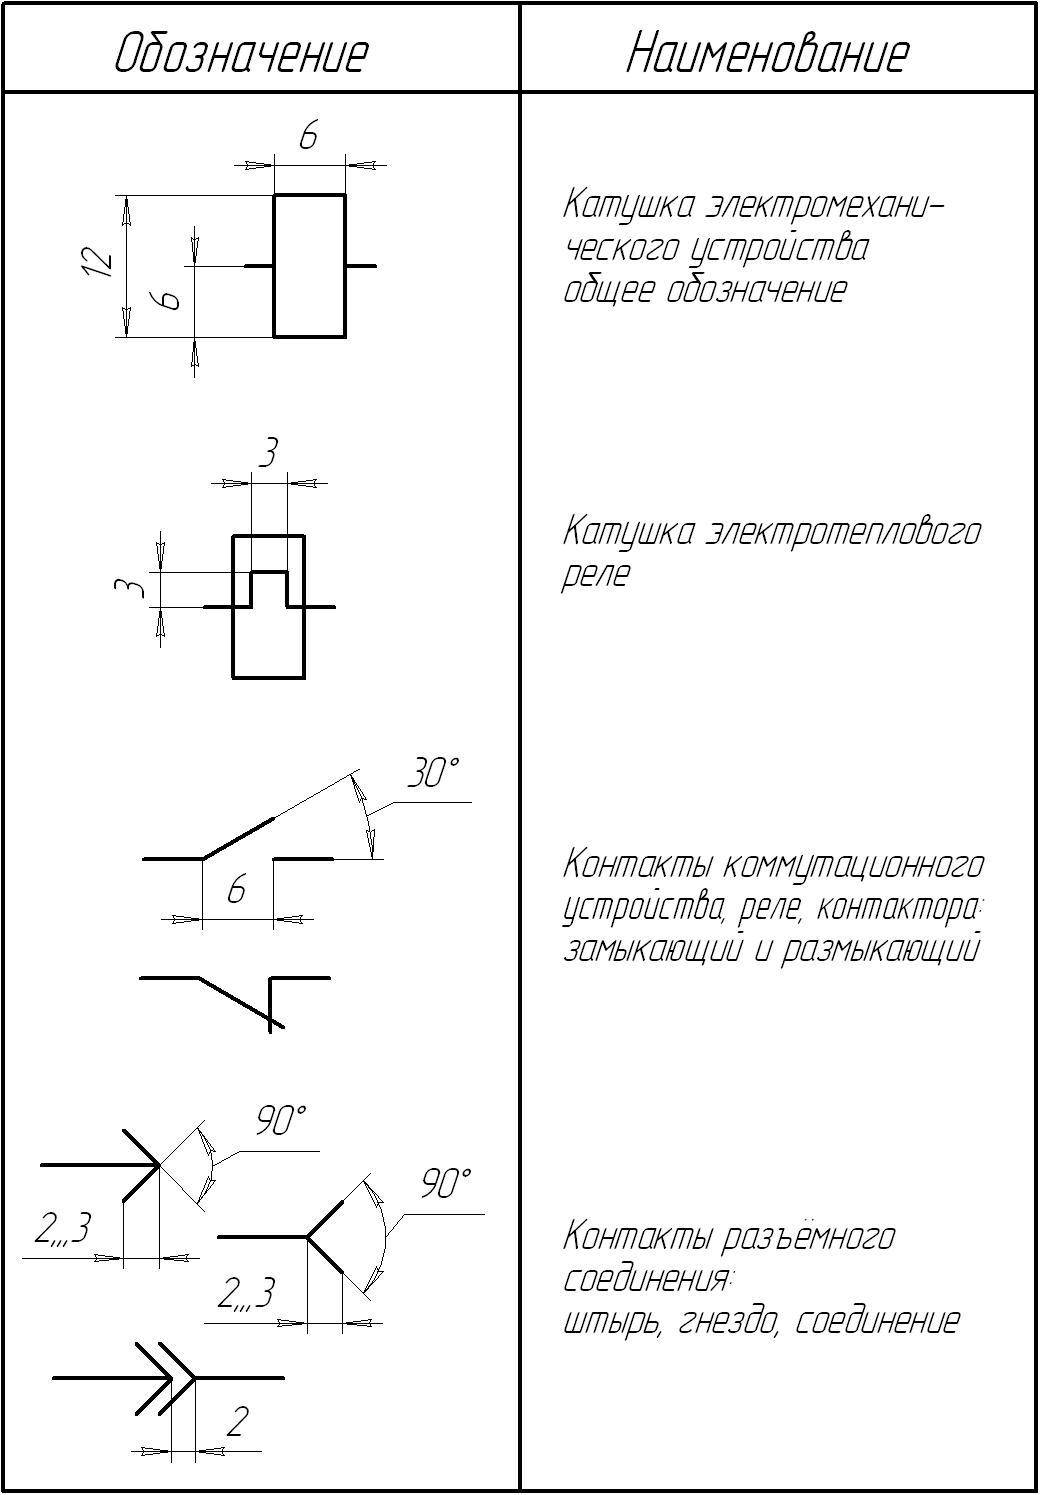 Обозначения в эл. схемах. стандарт уго: элементы электрической цепи и их условные обозначения